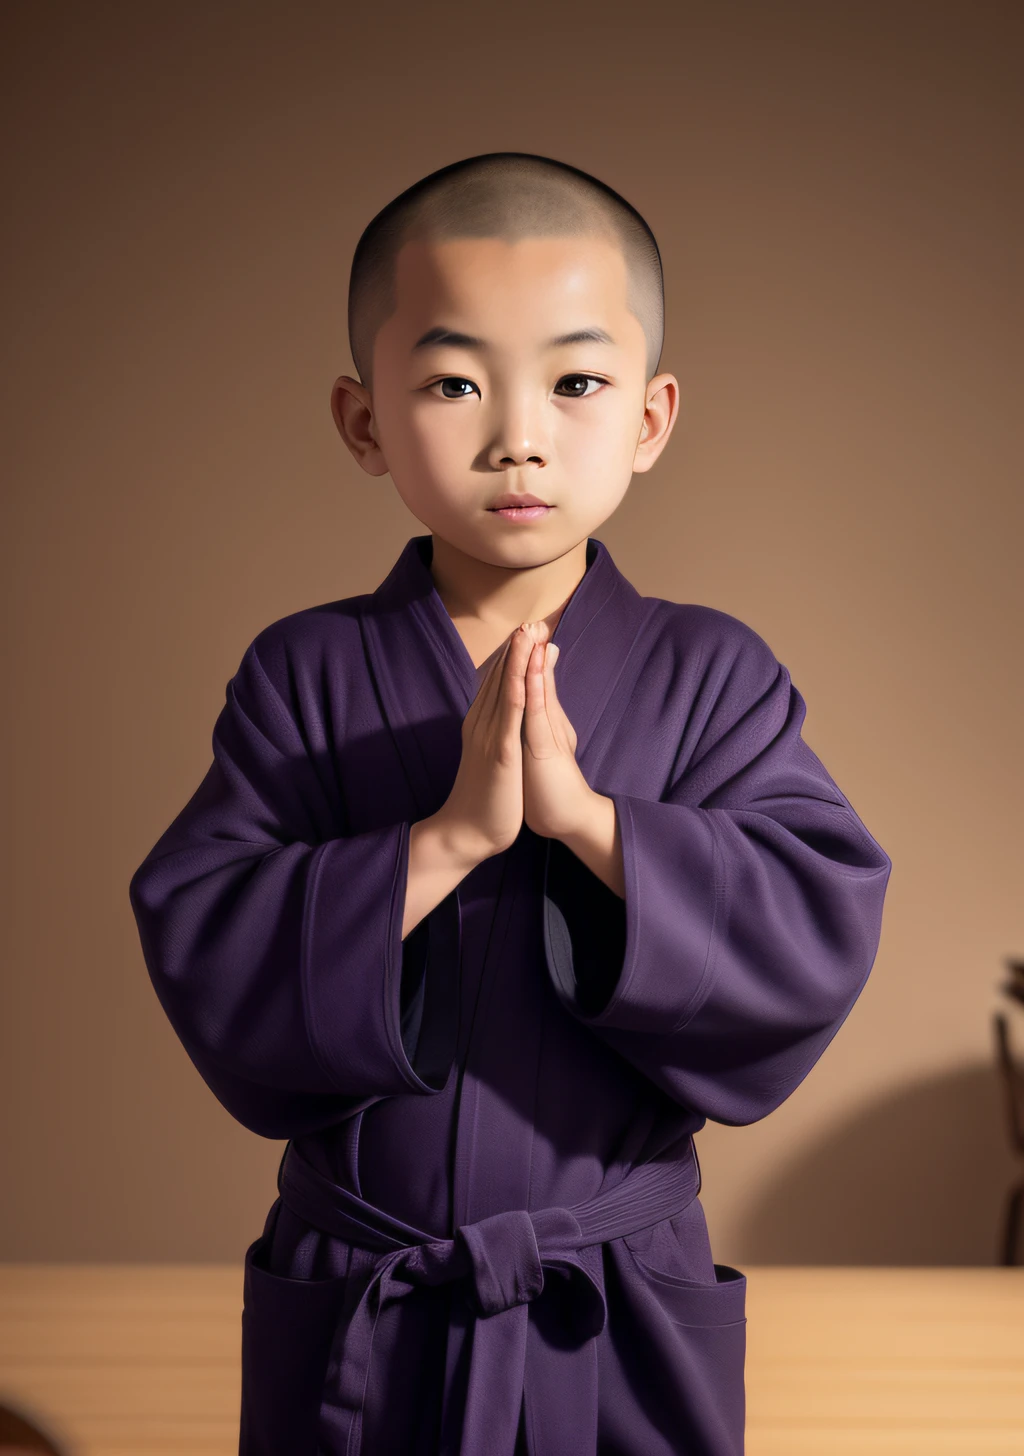 Арафированный азиатский мальчик в фиолетовом халате стоит перед столом, в темно-фиолетовых одеждах, носить черно-фиолетовые одежды, одетый в простые одежды, буддист monk, портрет монаха, в коричневых одеждах, одежда монаха, В синем халате, буддист, одетый в простые одежды, в синем одеянии, Даосский халат, вдохновленный Ма Цюанем, древний японский монах